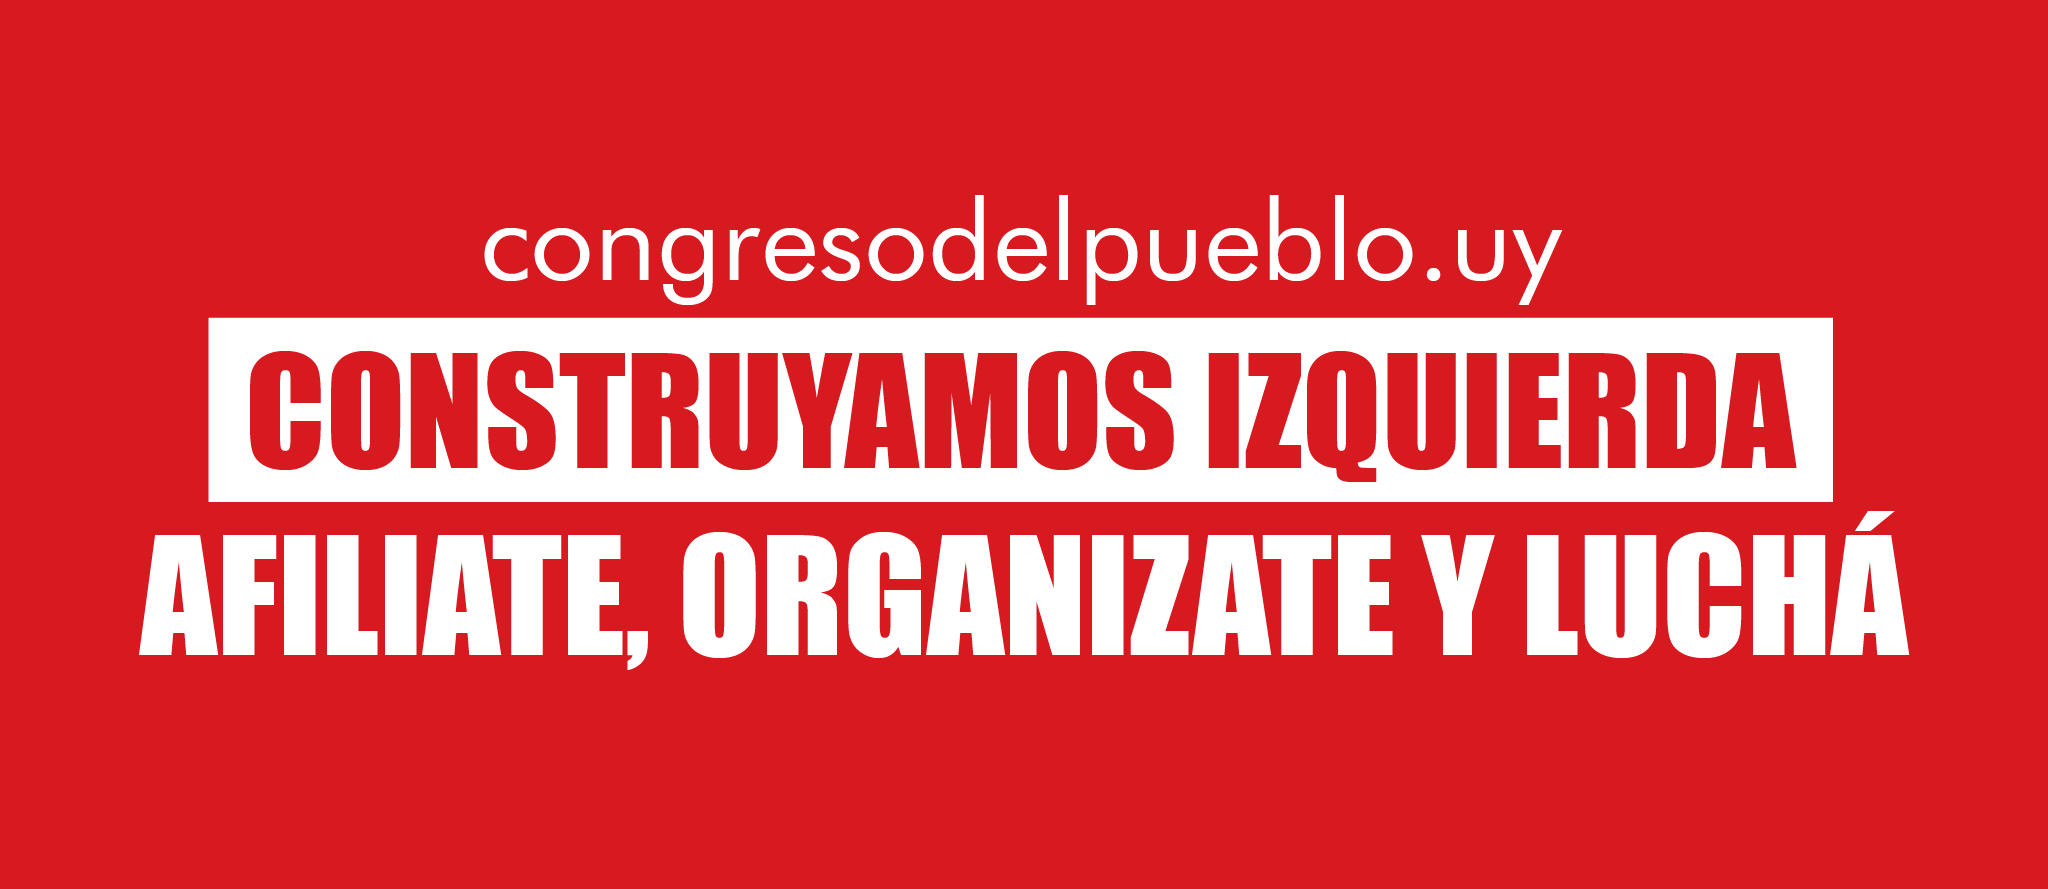 Banner de la Campaña de Afiliación de Congreso del Pueblo